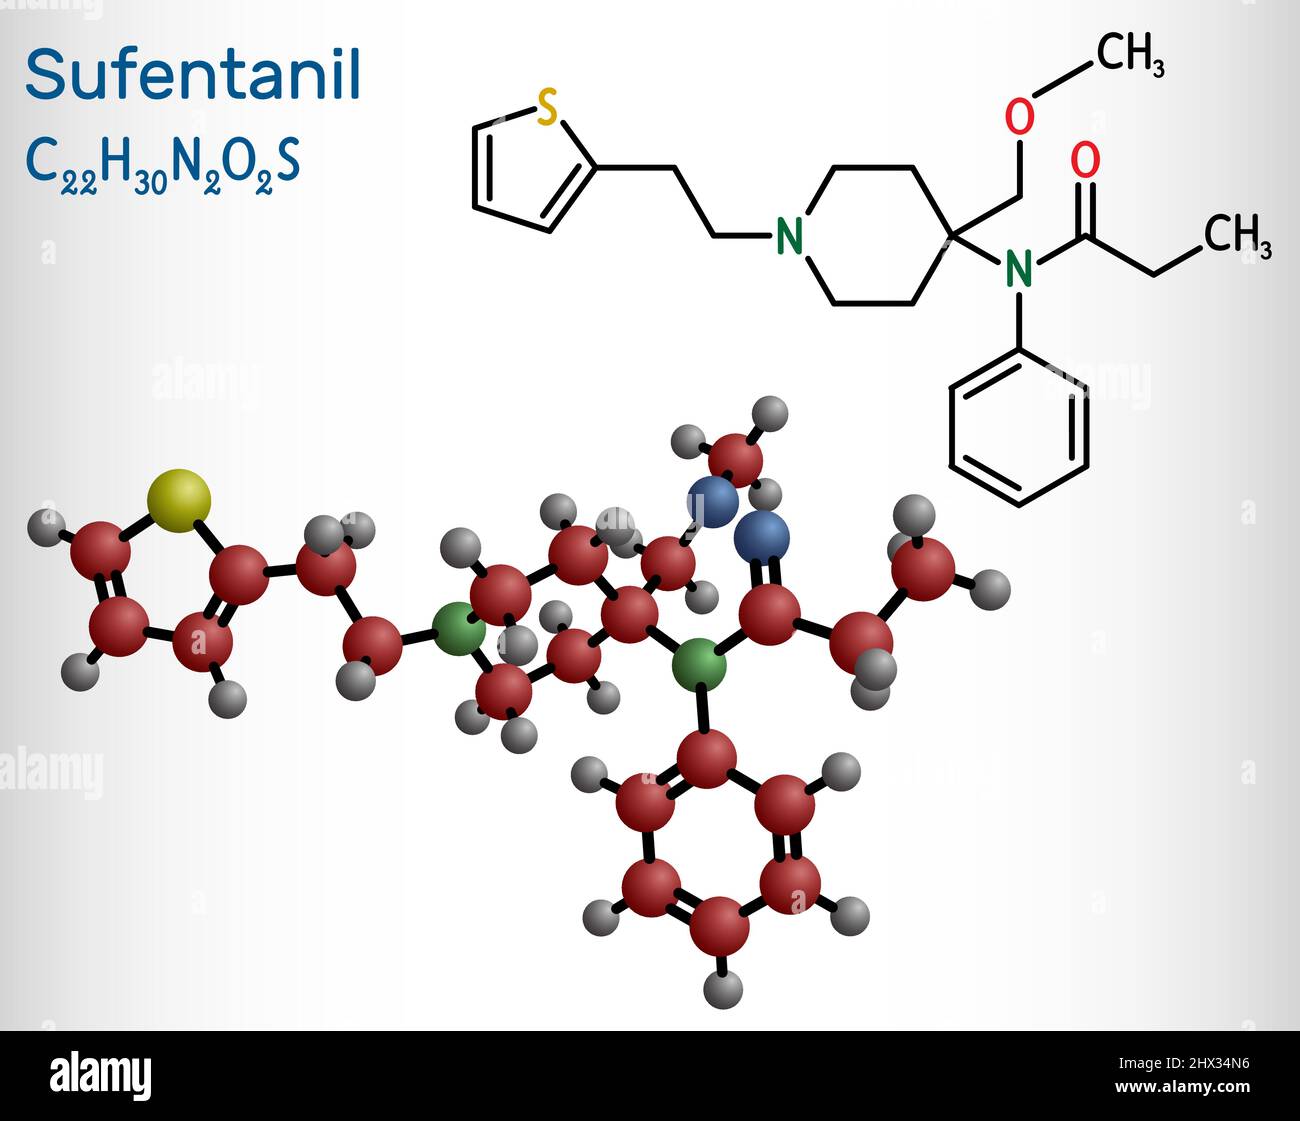 Sufentanil-Molekül. Es handelt sich um ein Opioid-Analgetikum, das zur Behandlung schwerer, akuter Schmerzen eingesetzt wird. Strukturelle chemische Formel und Molekülmodell. Vecto Stock Vektor